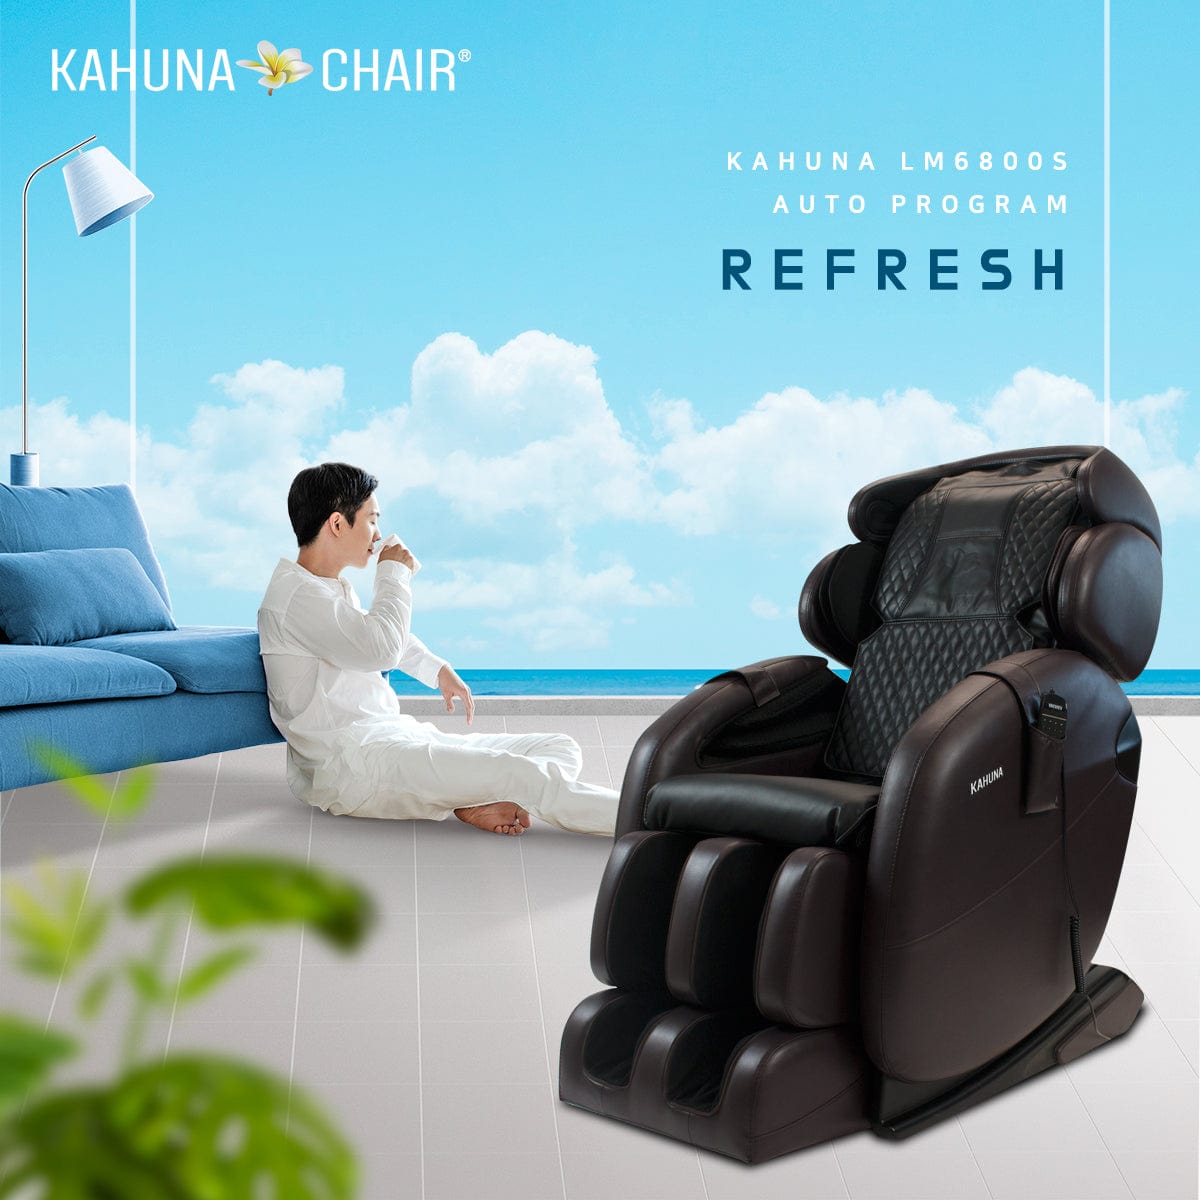 Kahuna Chair – LM 6800S [Dark Brown] - Massage Chair